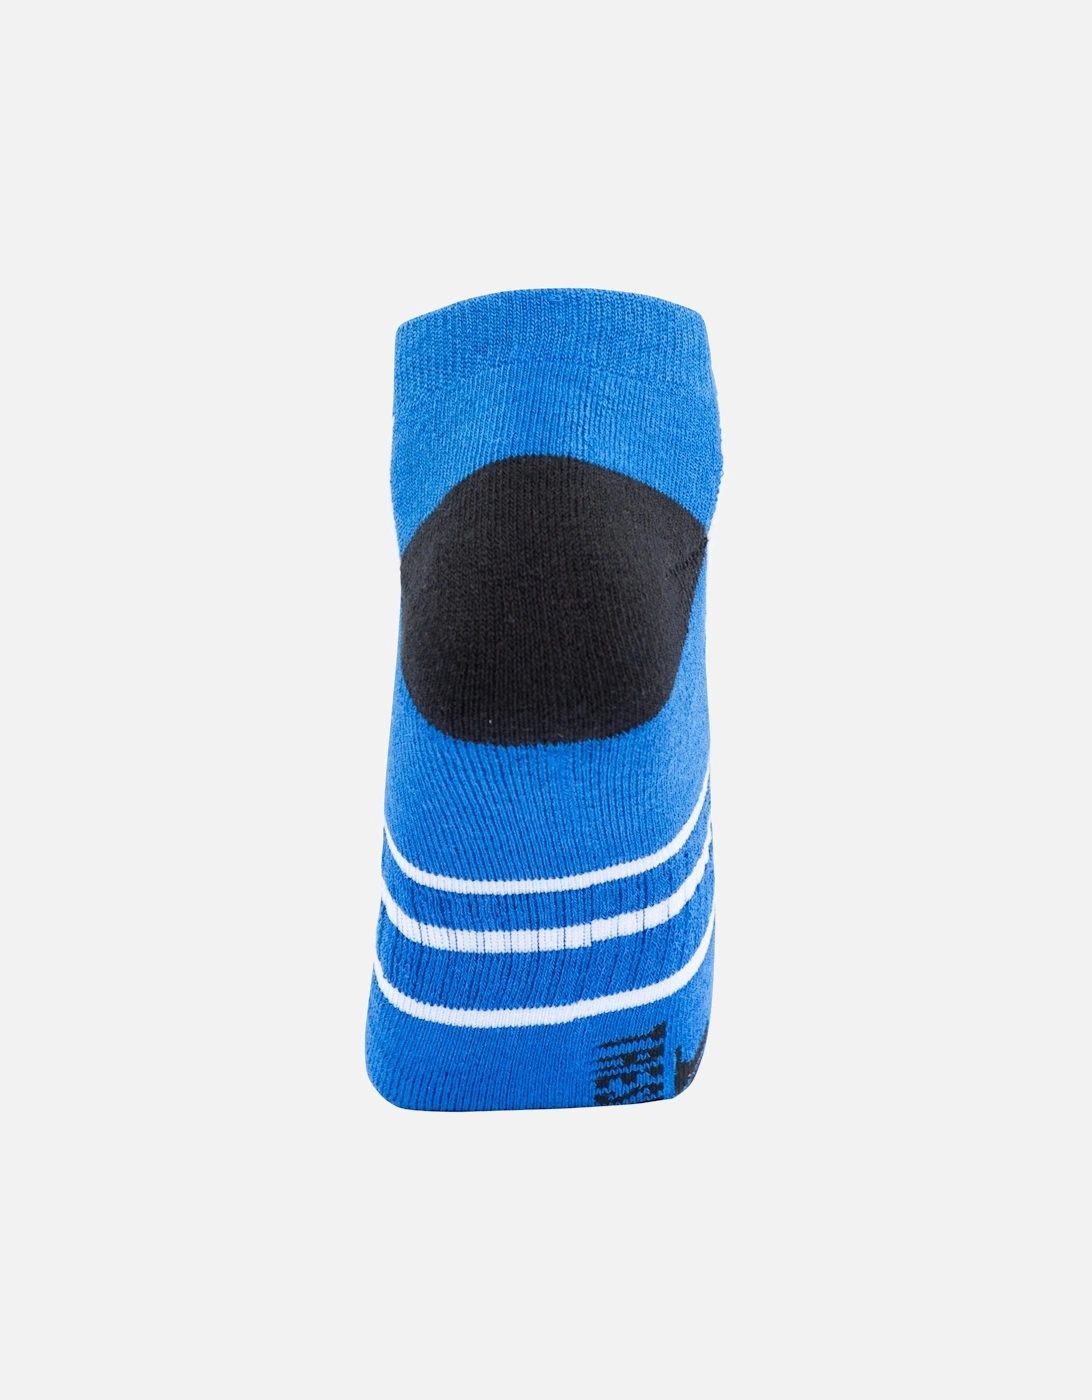 Unisex Adult Dinky Trainer Socks